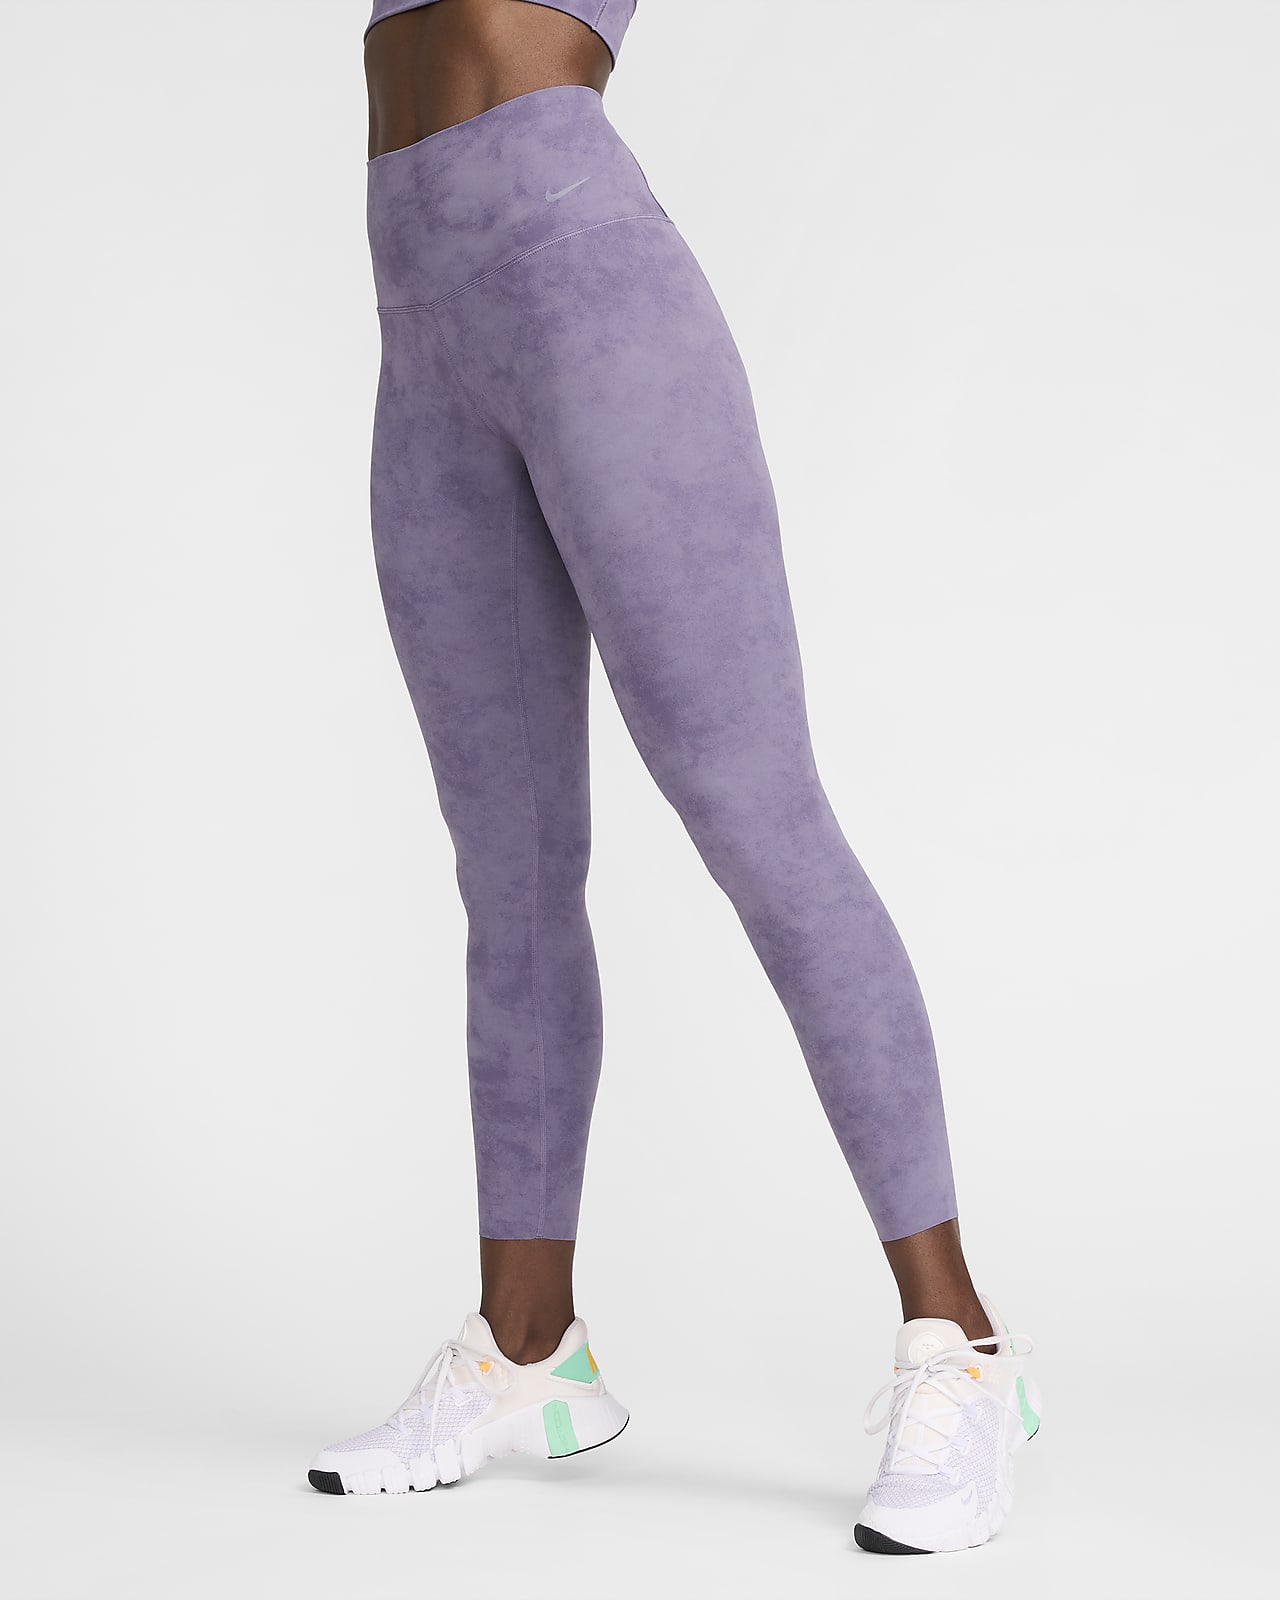 Nike Zenvy Tie-Dye Women's Gentle-Support High-Waisted 7/8 Leggings